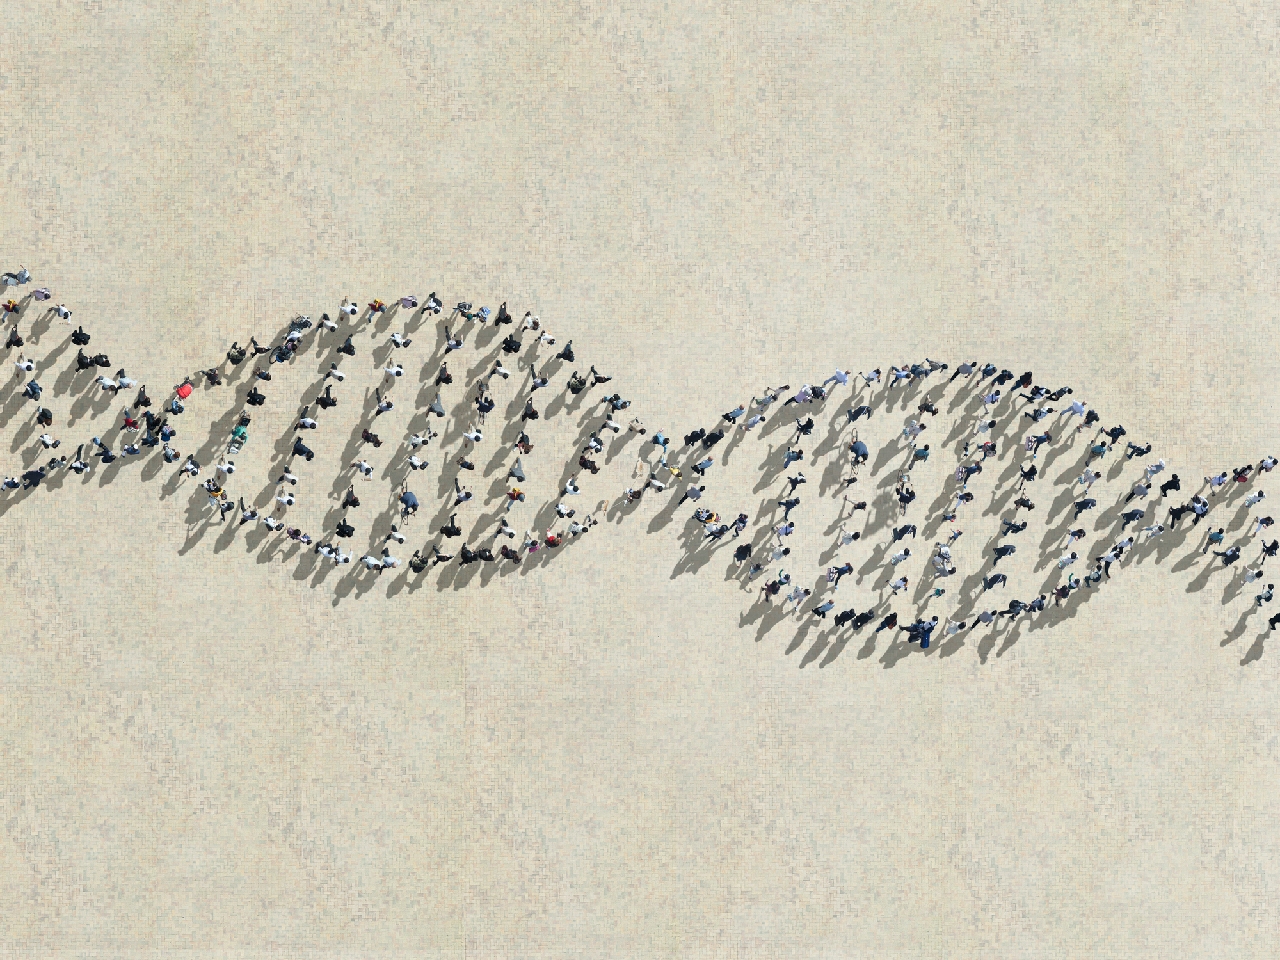 从行走的人身上提取的DNA链